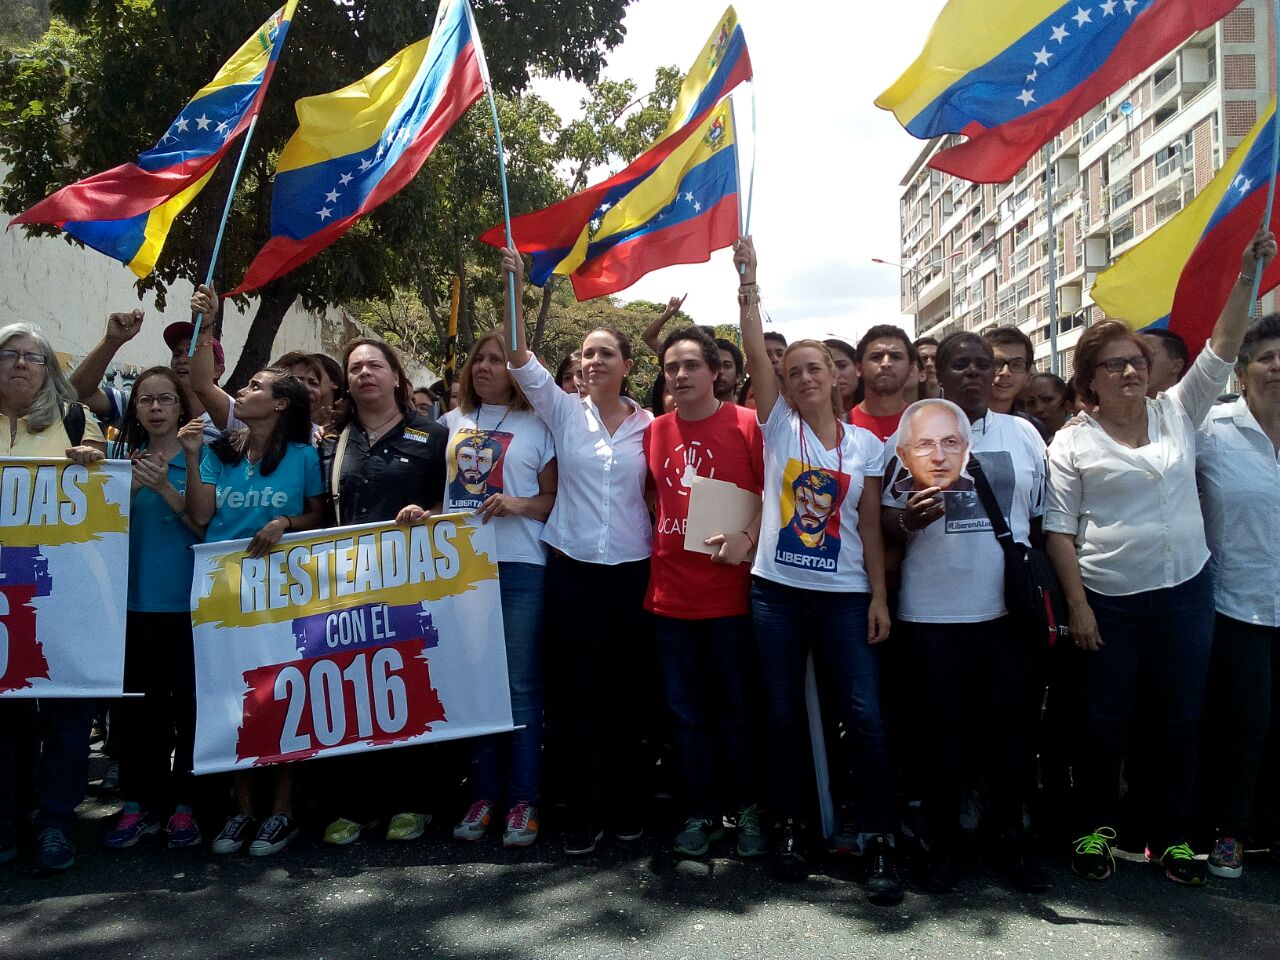 Mujeres y jóvenes arrancan agenda de una Venezuela resteada con 2016